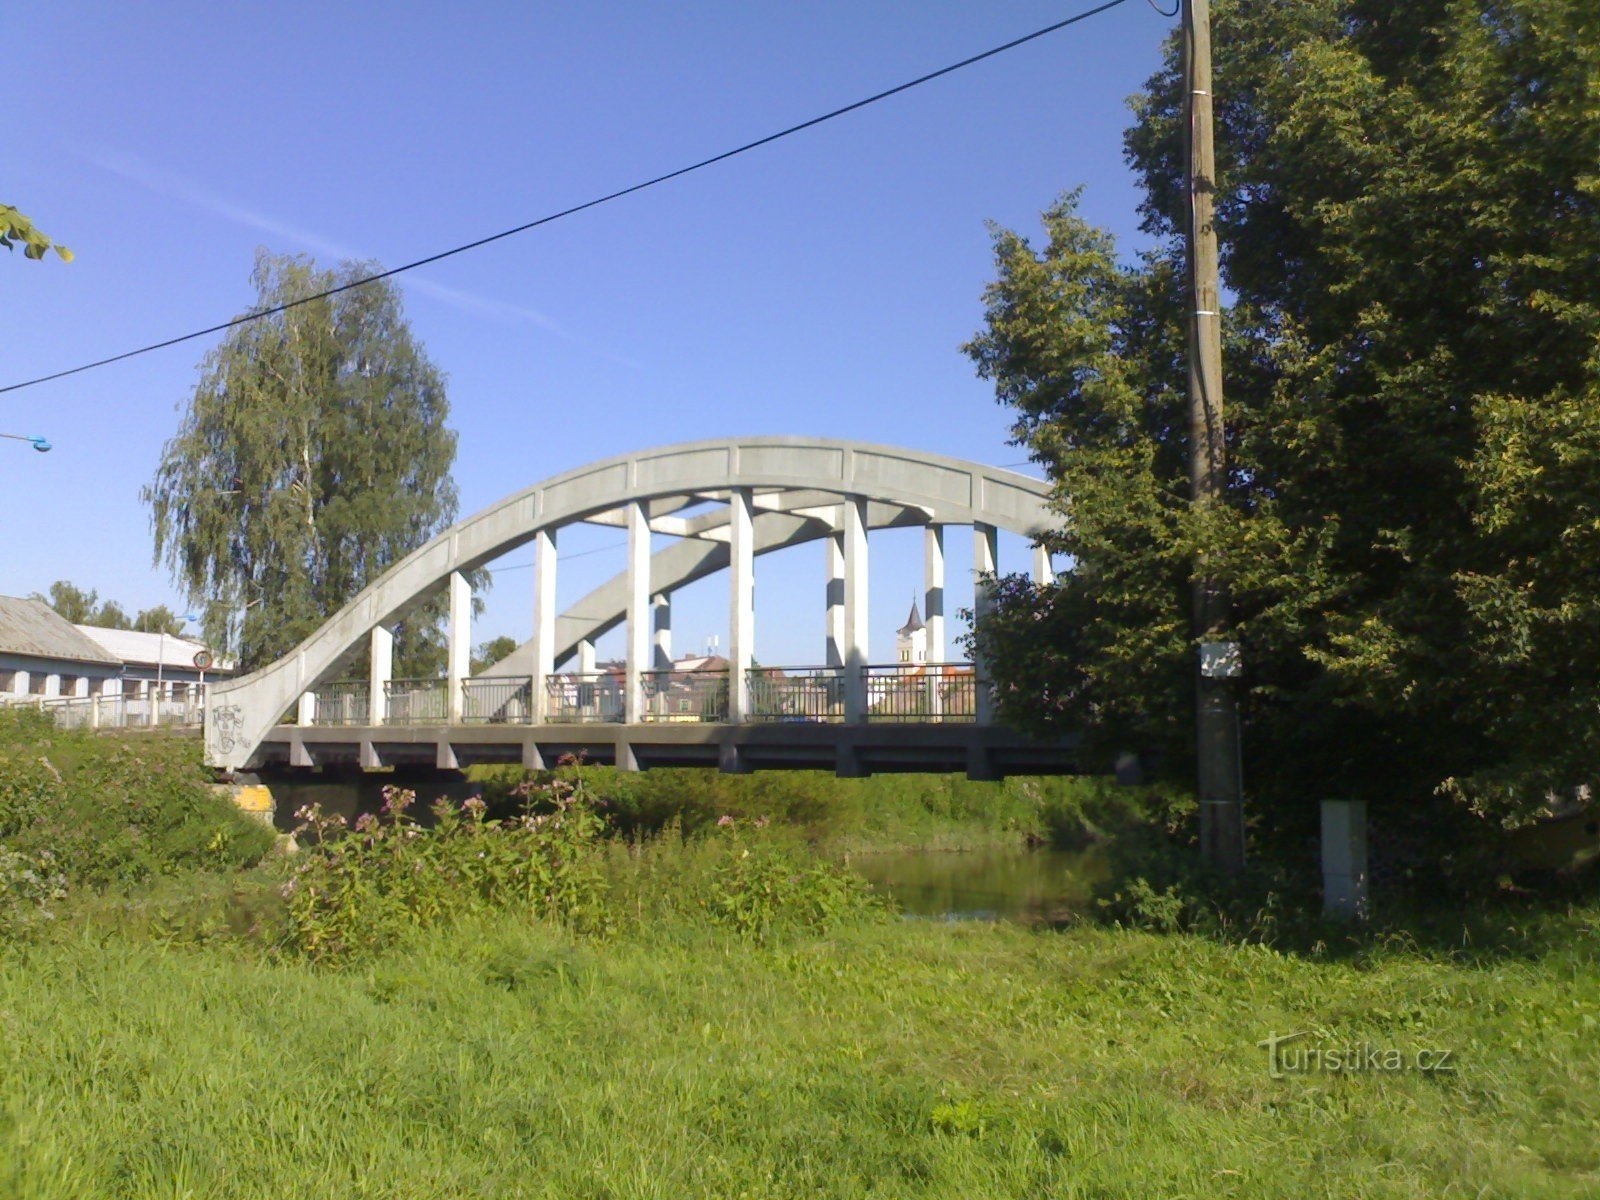 Týniště nad Orlicí - most čez Orlicí